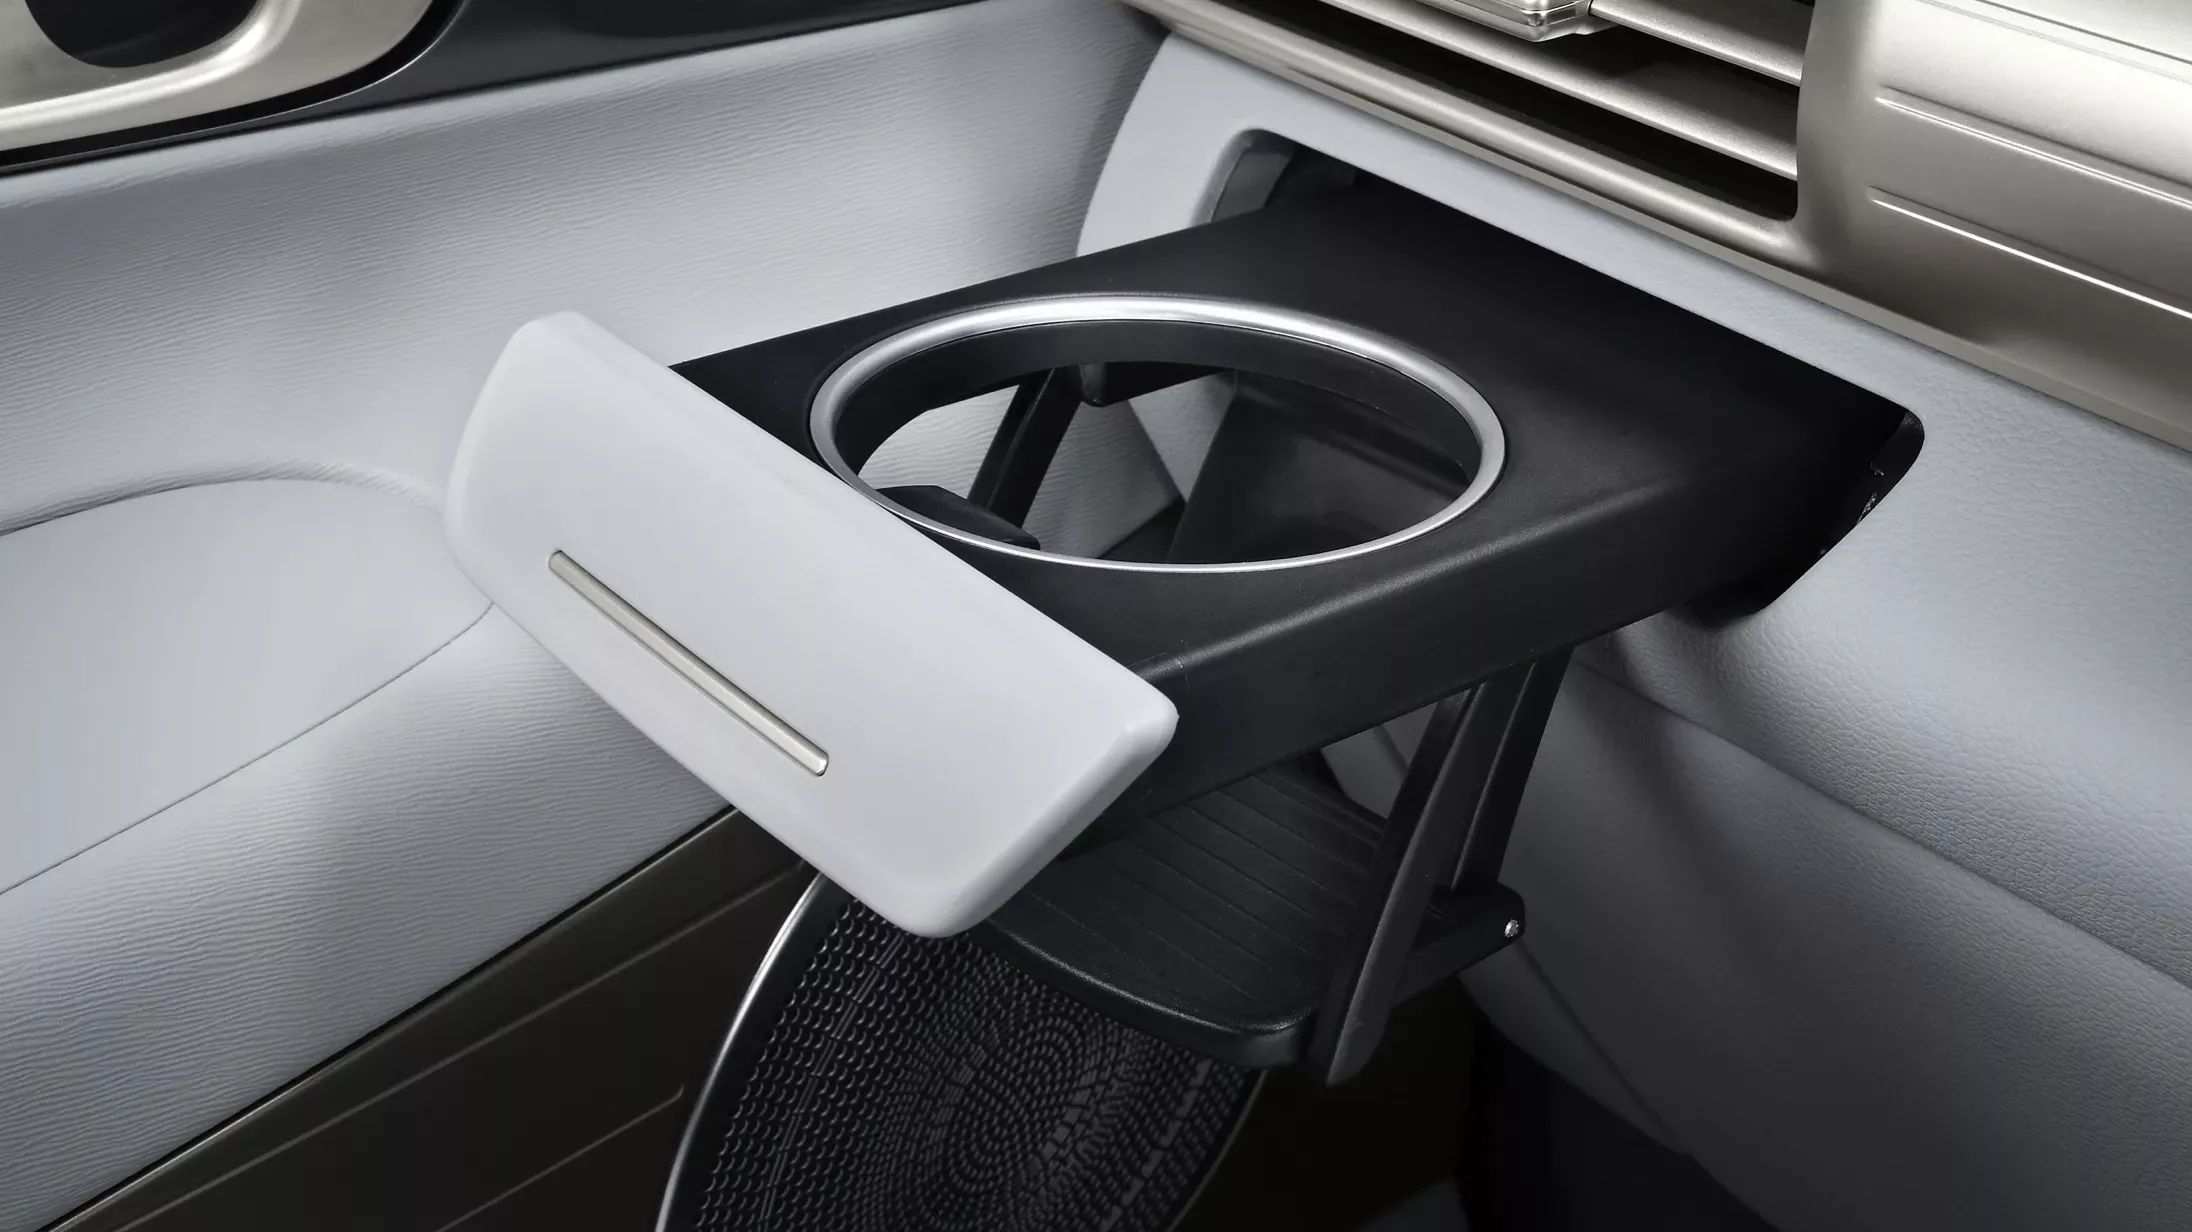 NEXO (ネッソ) 燃料電池車 FCEV インテリア 引き出し式ドリンクホルダー - Hyundai Mobility Japan (ヒョンデモビリティジャパン)